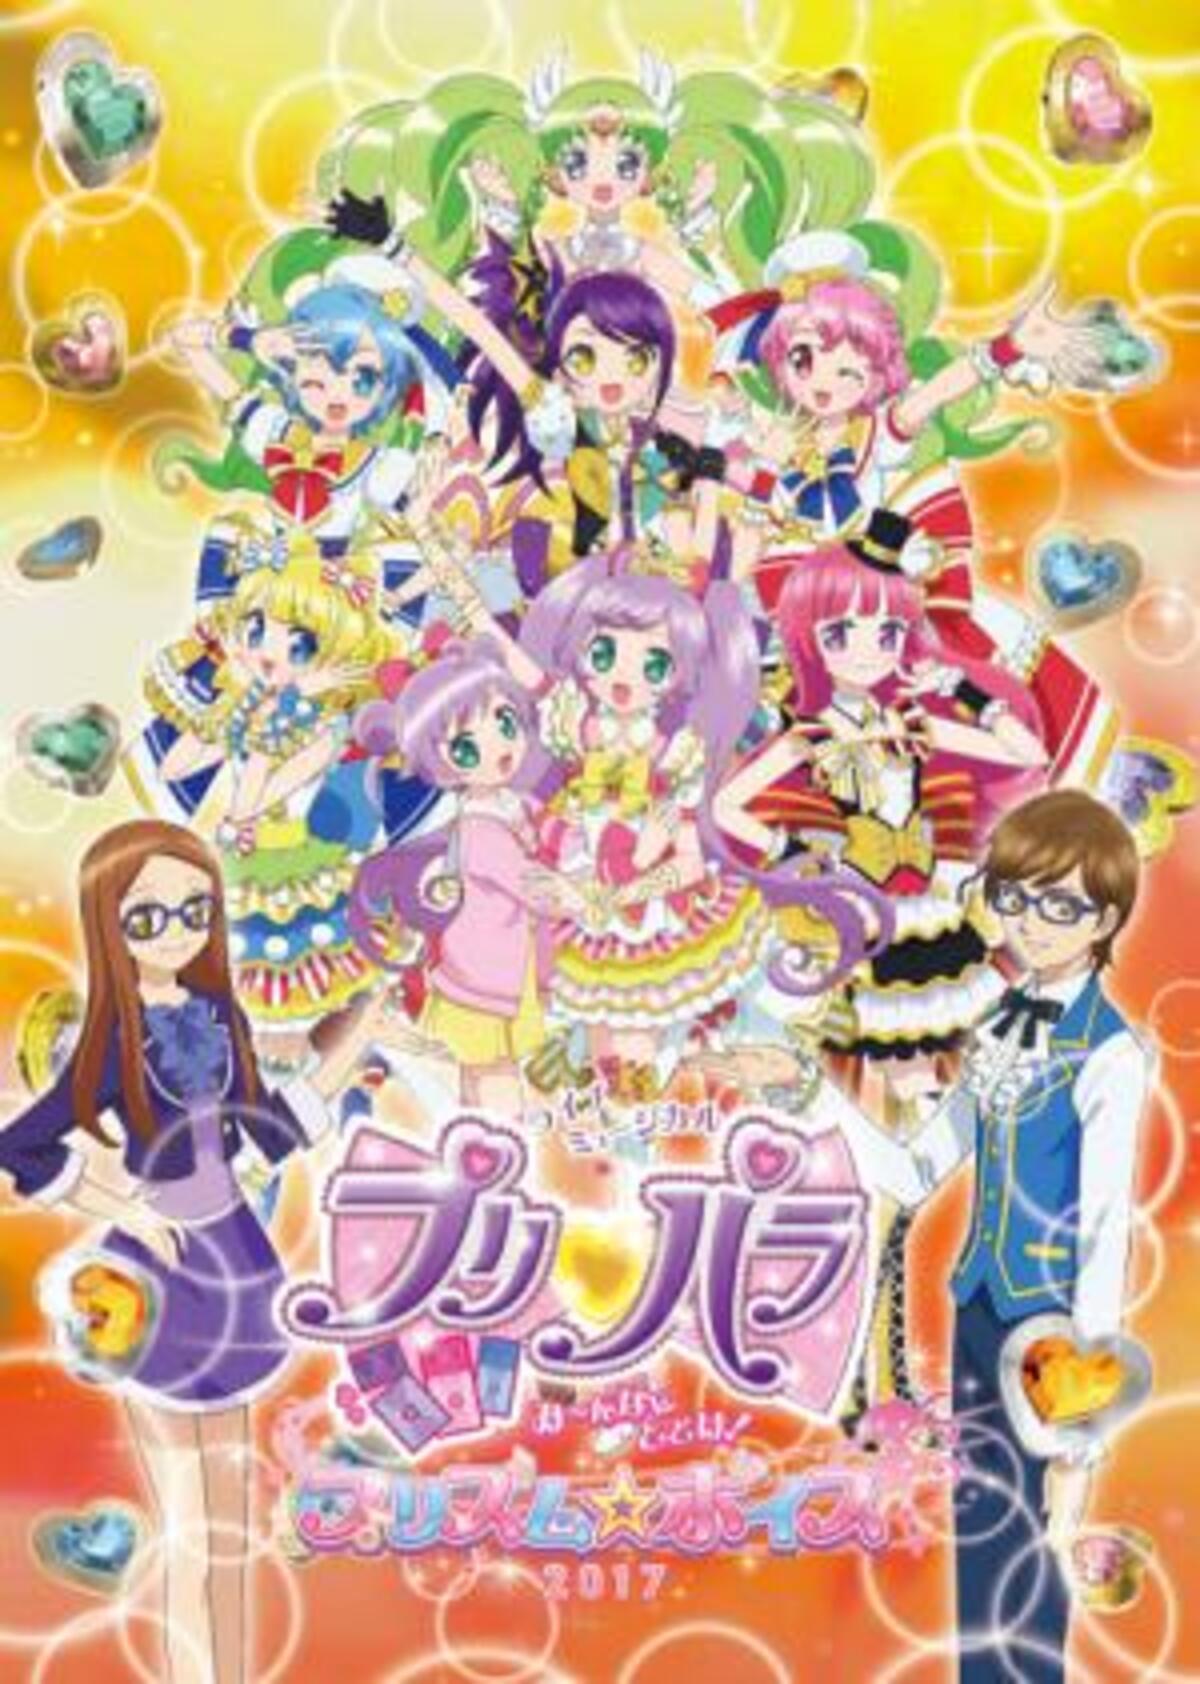 舞台 プリパラ アニメビジュアル ミニライブ発表 16年10月28日 ウーマンエキサイト 1 2